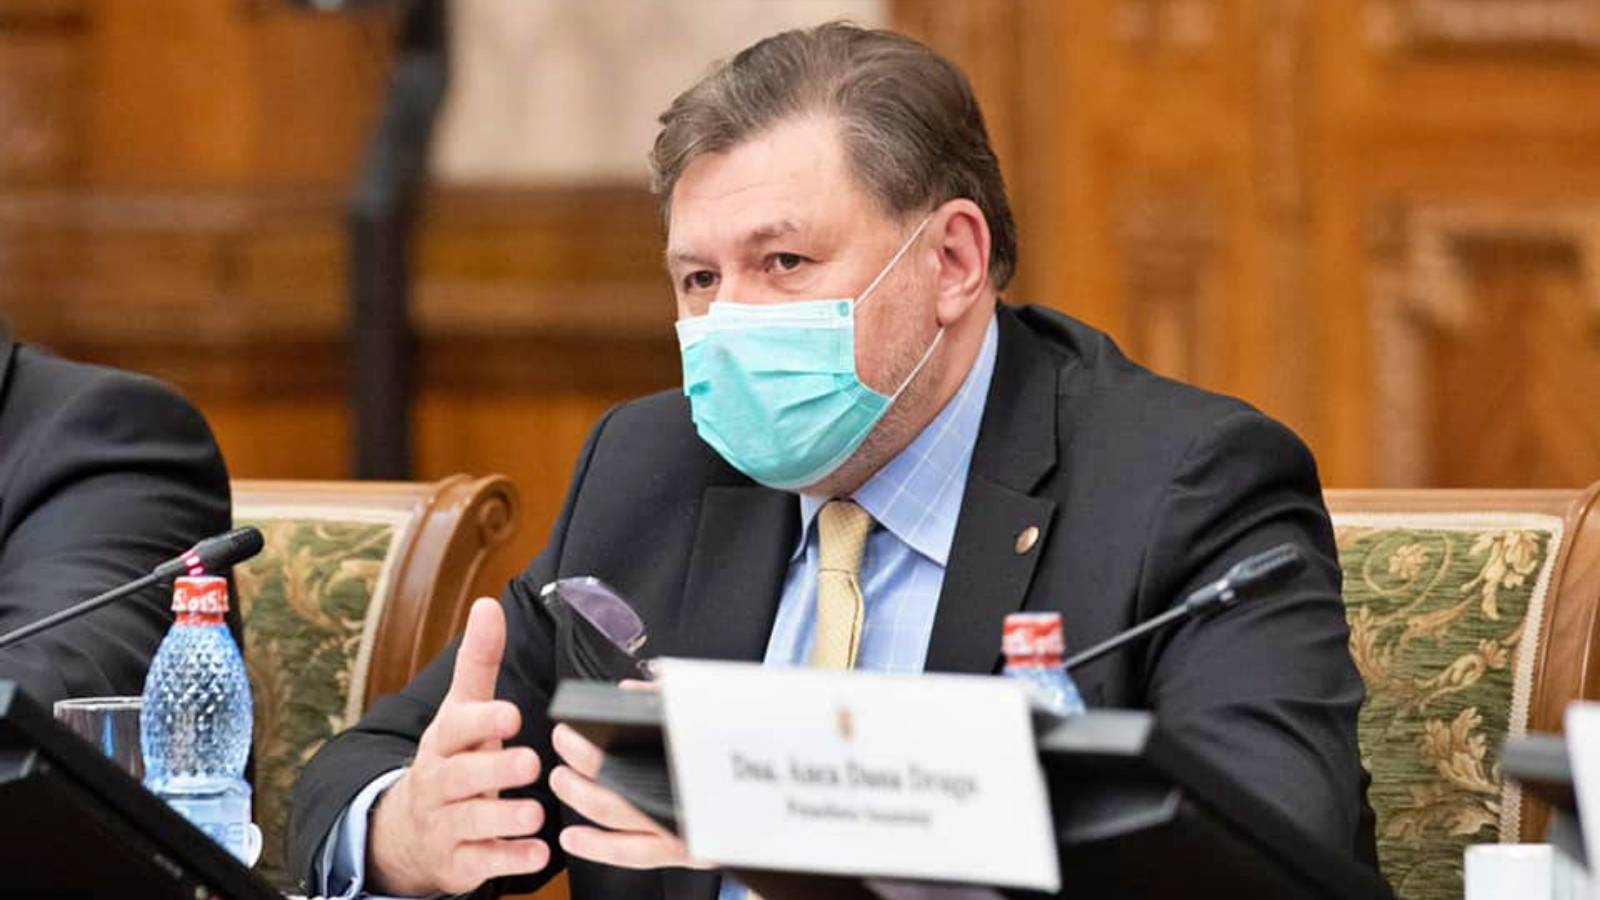 Advertencia del Ministro de Salud Anuncio de última hora Rumanos serios